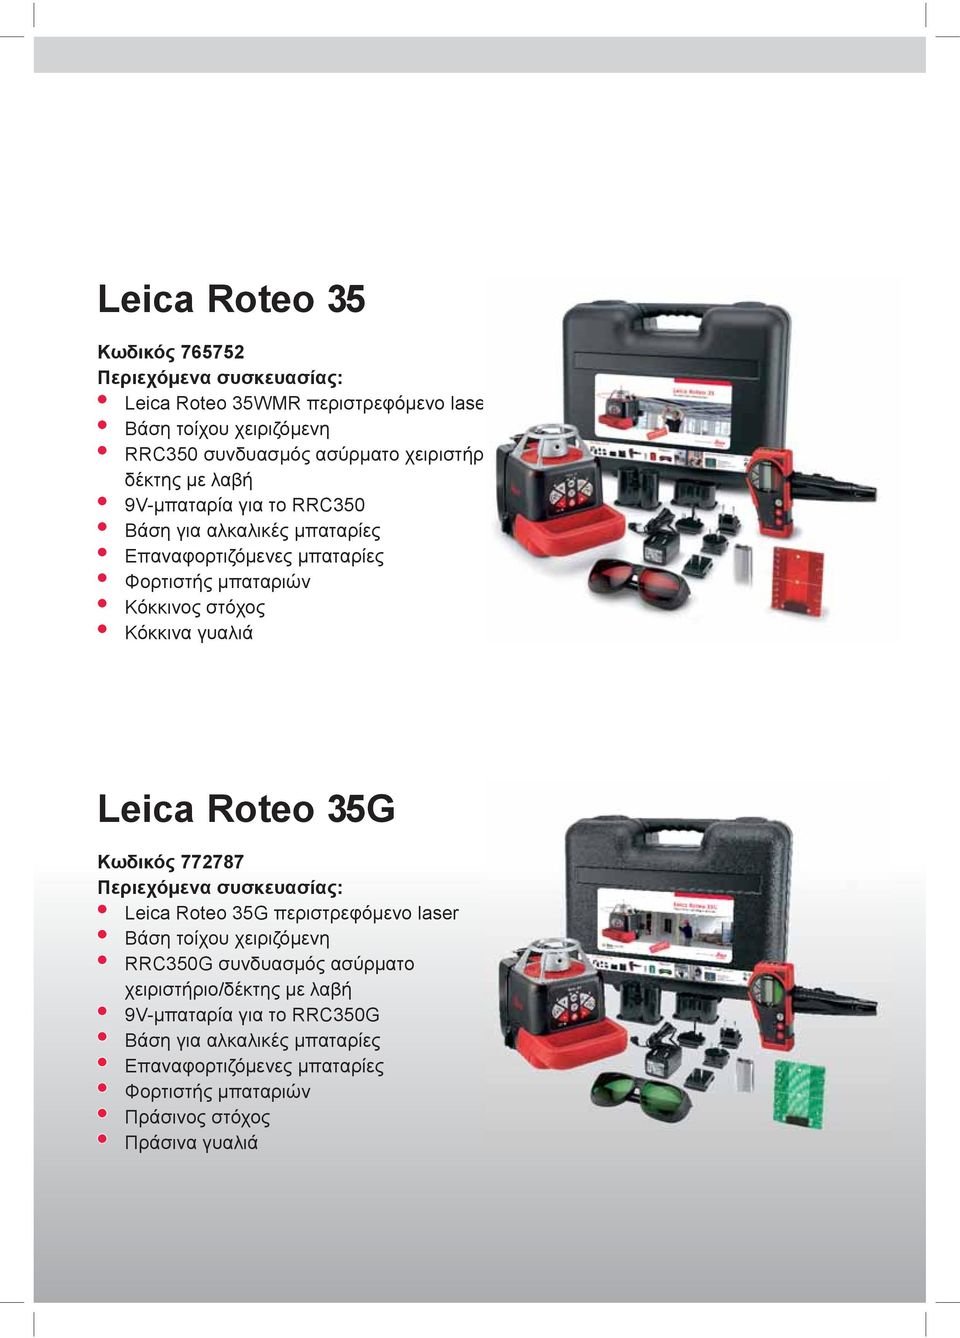 Κόκκινα γυαλιά Leica Roteo 35G Κωδικός 772787 Περιεχόμενα συσκευασίας: Leica Roteo 35G περιστρεφόμενο laser Βάση τοίχου χειριζόμενη RRC350G συνδυασμός